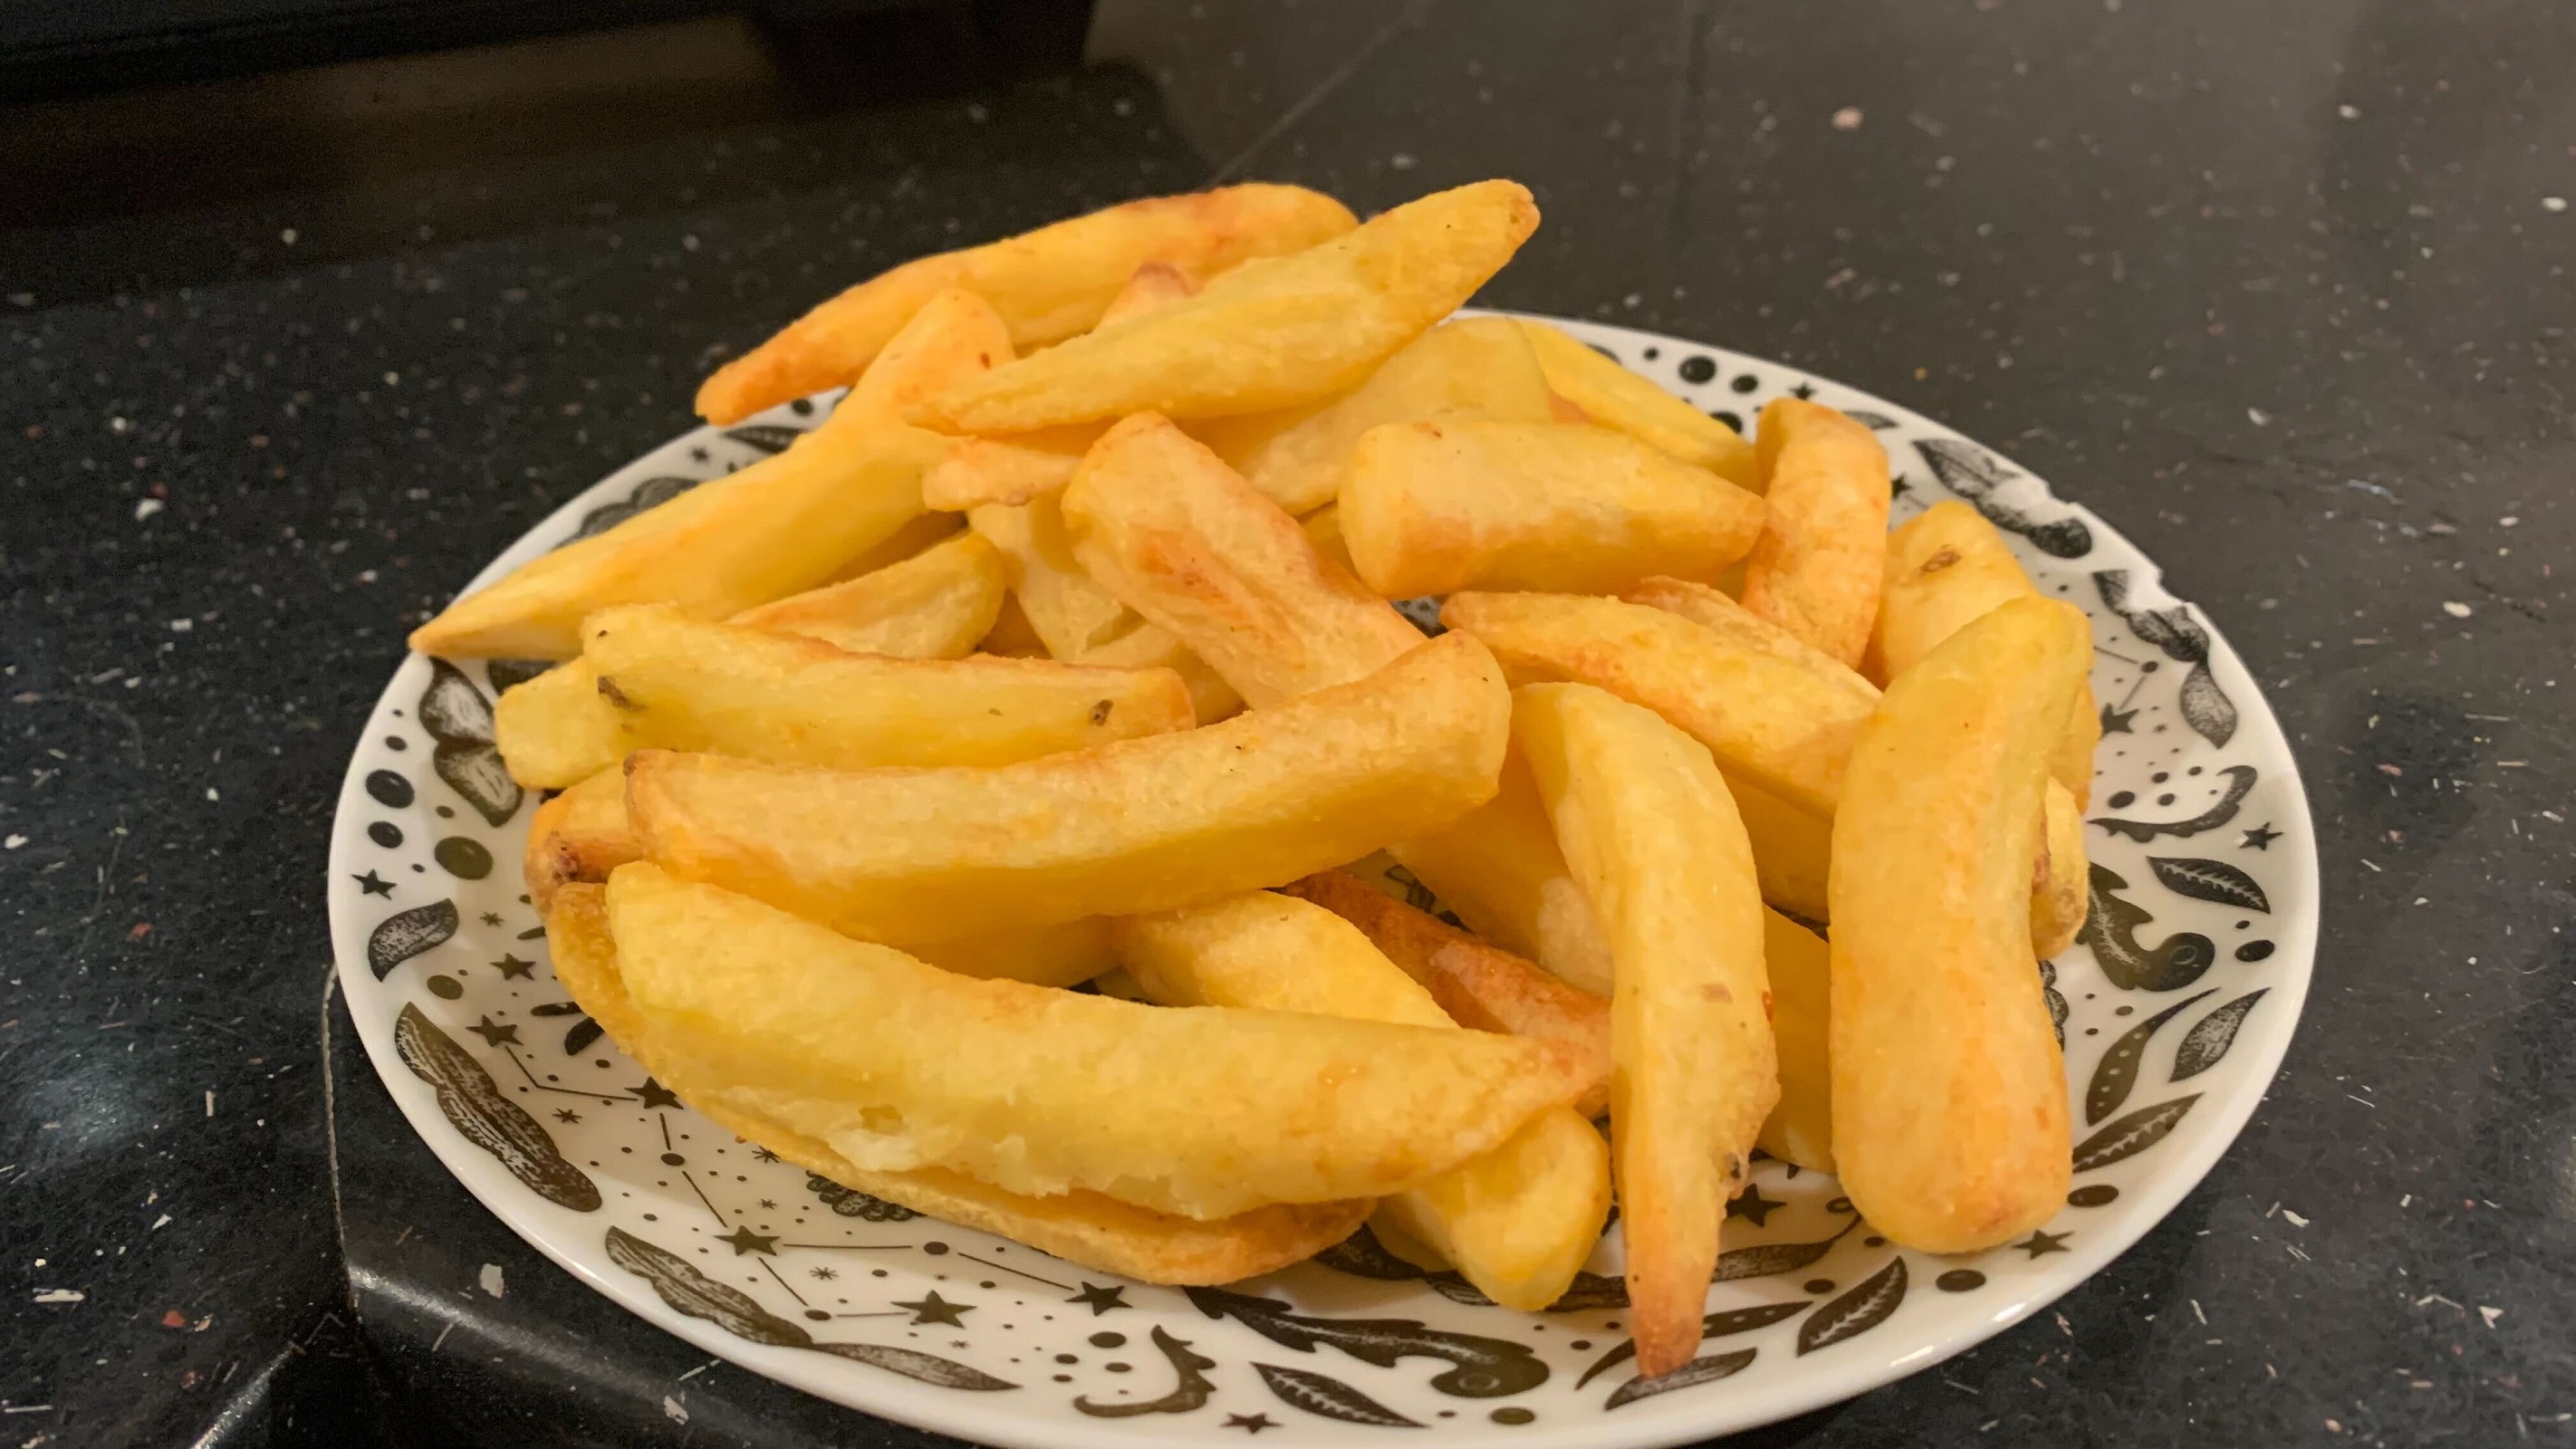 Thick cut frozen fries in an air fryer